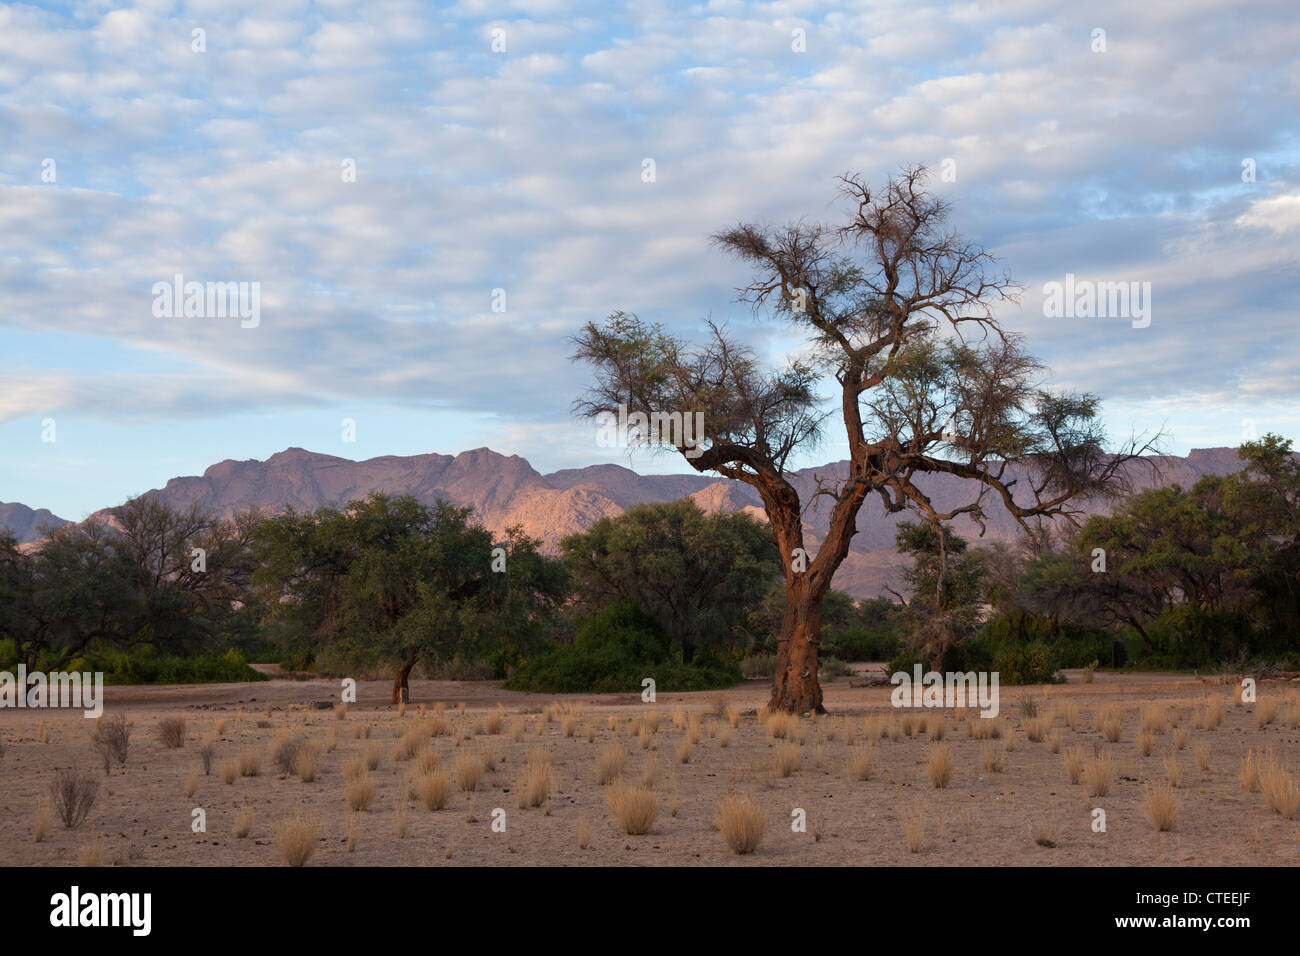 Impressionen von Namibia, Brandberg, Erongo, Namibia Stock Photo